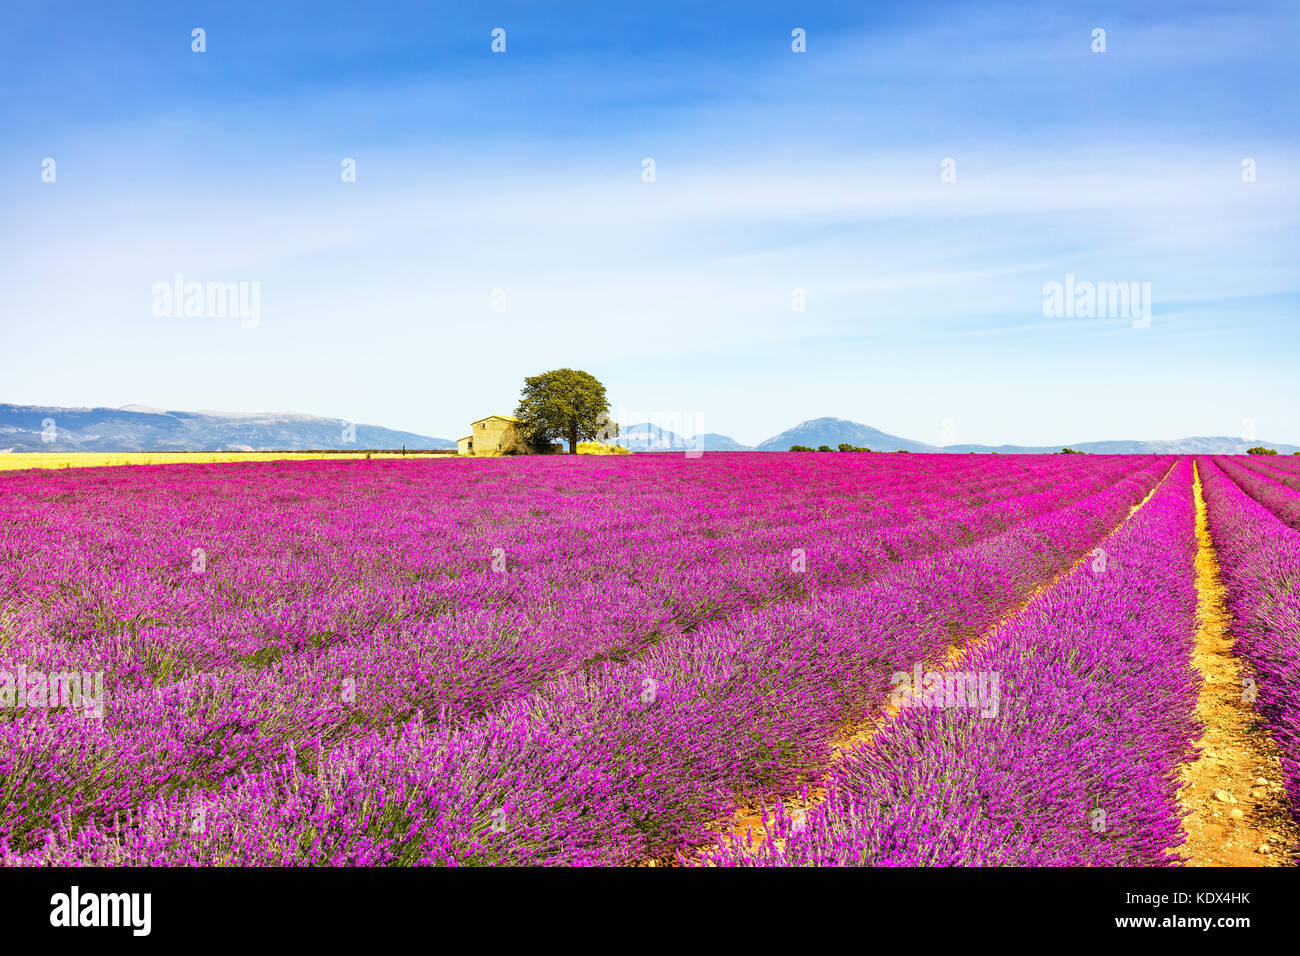 Lavendel Blumen blühen, Feld, Weizen, Haus und einsame Baum. Panorama-Blick. Plateau de Valensole, Provence, Frankreich, Europa. Stockfoto